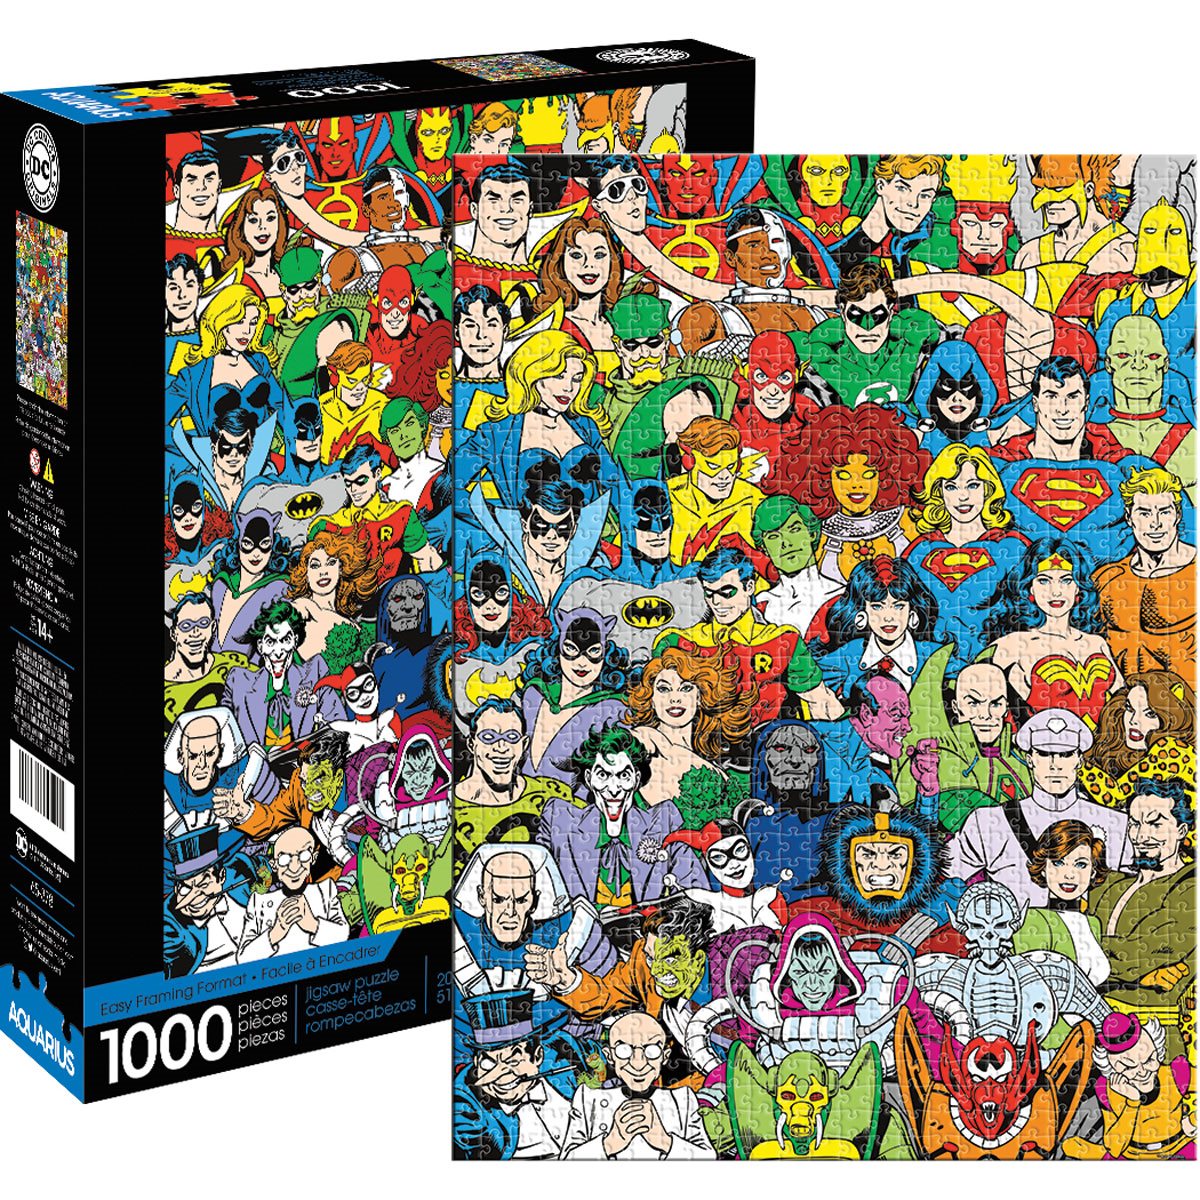 Cut off Postscript Blind DC Comics- Retro Cast 1,000-Piece Puzzle - Entertainment Earth